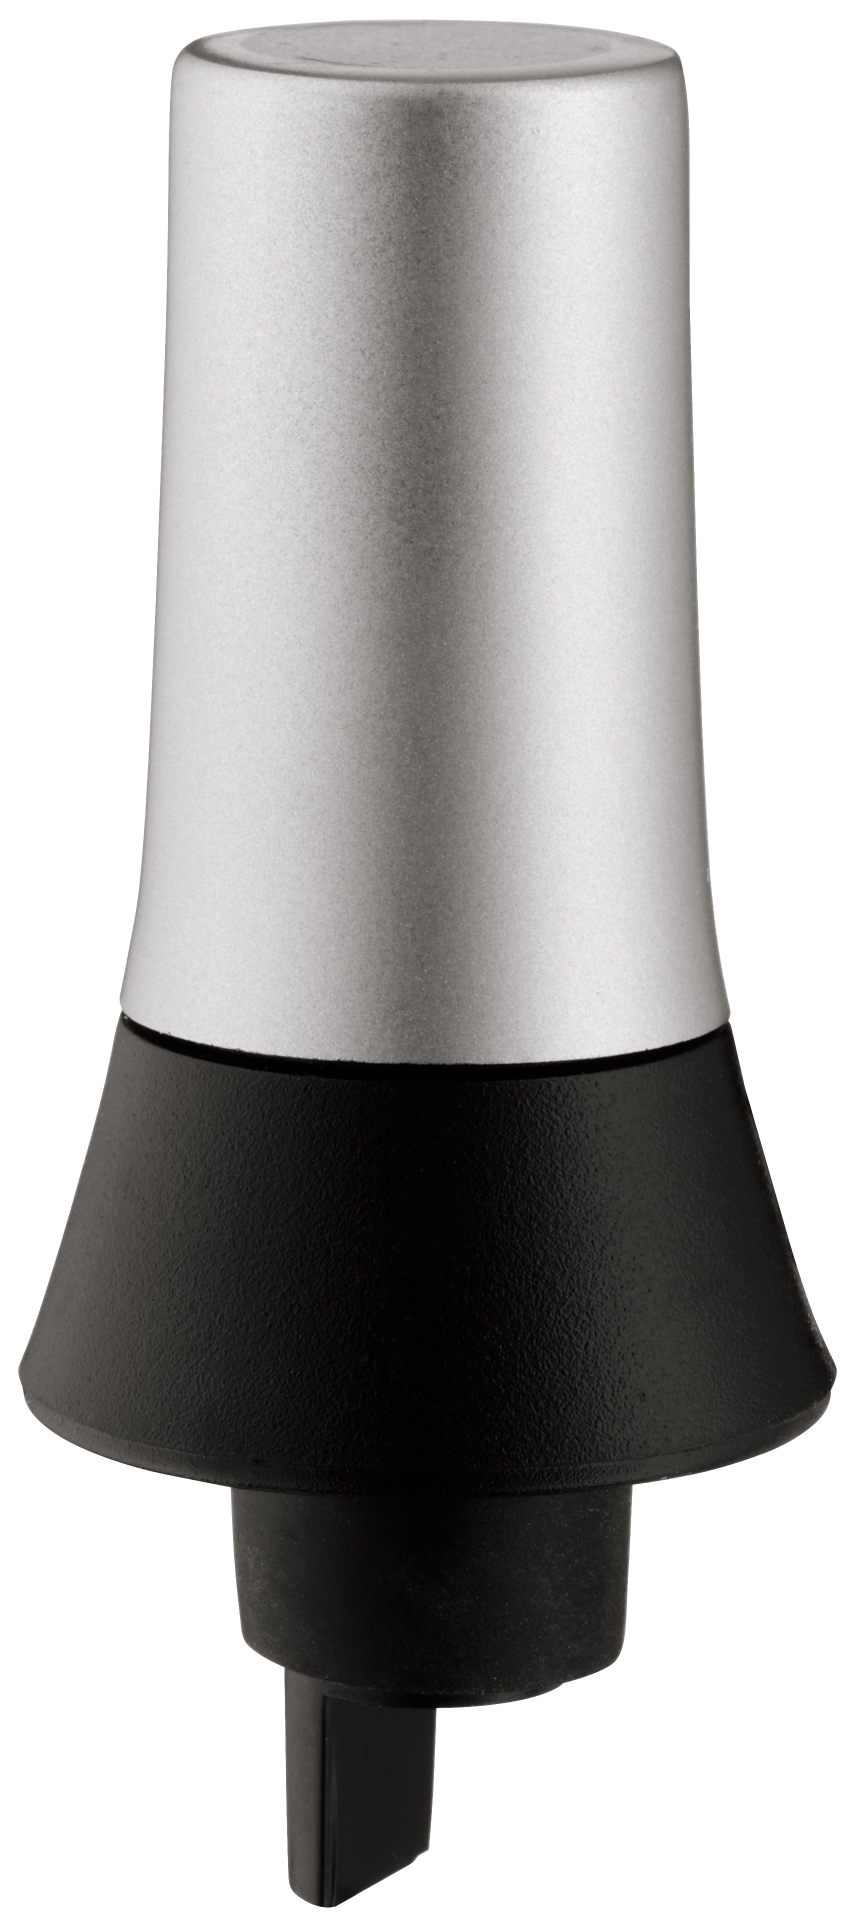 Weinausgießer Clever & More Weinverschluss mit Ausgießer,Edelstahl/Kunststoff schließt luftdicht ab,sorgt für eine lange Frische